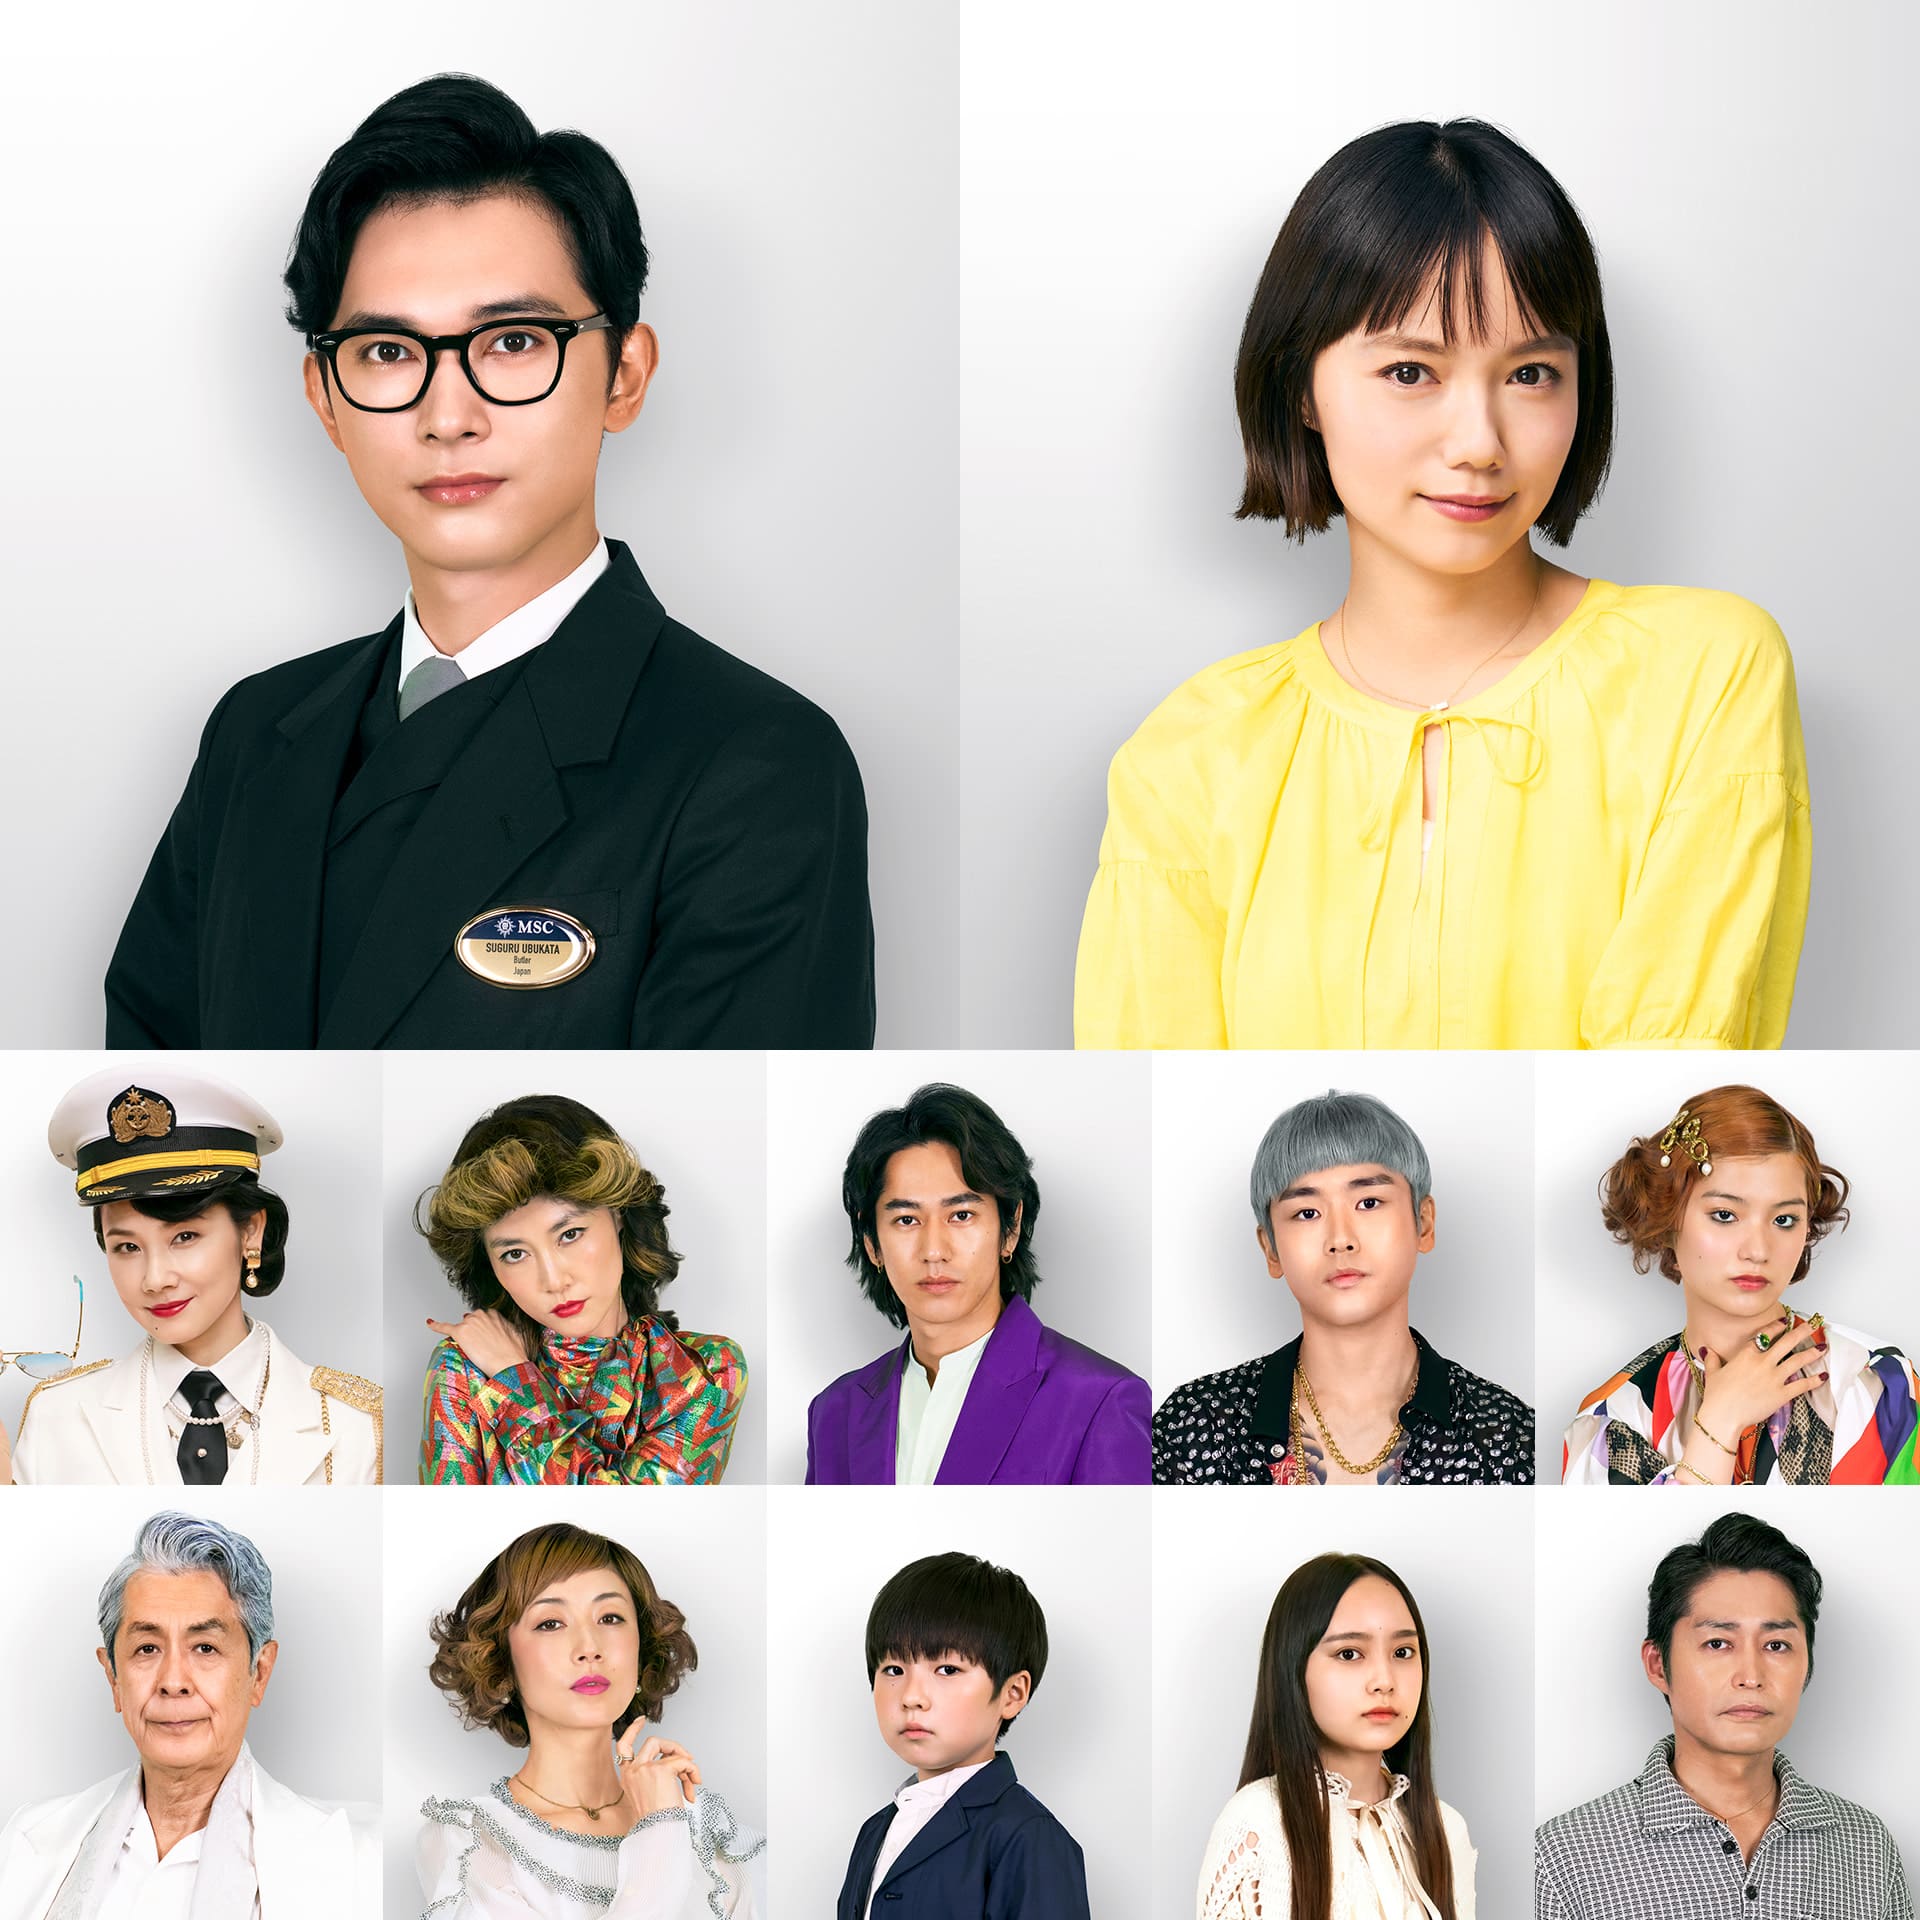 elenco de amor y aguas profundas cartel de comedia romántica japonesa de netflix